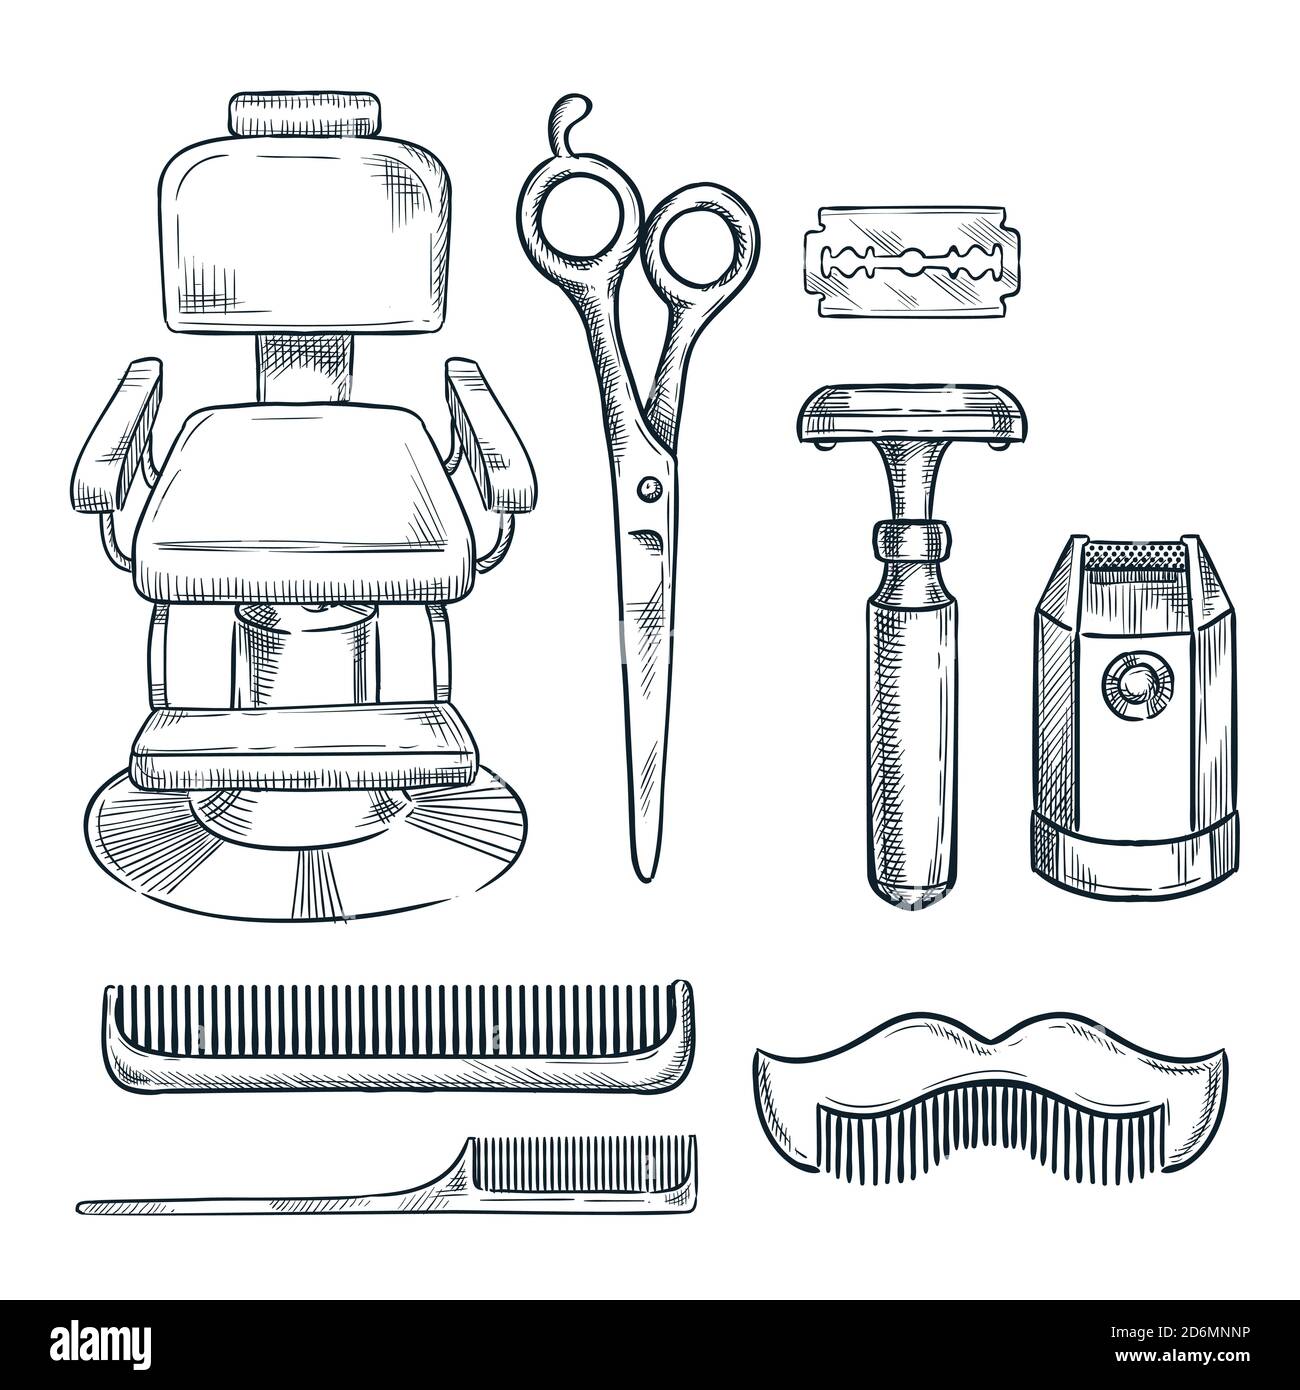 Barbershop vintage Werkzeuge und Ausrüstung Vektor Skizze Illustration. Handgezeichnete Ikonen und Designelemente für Herren Friseur oder Salon. Stock Vektor